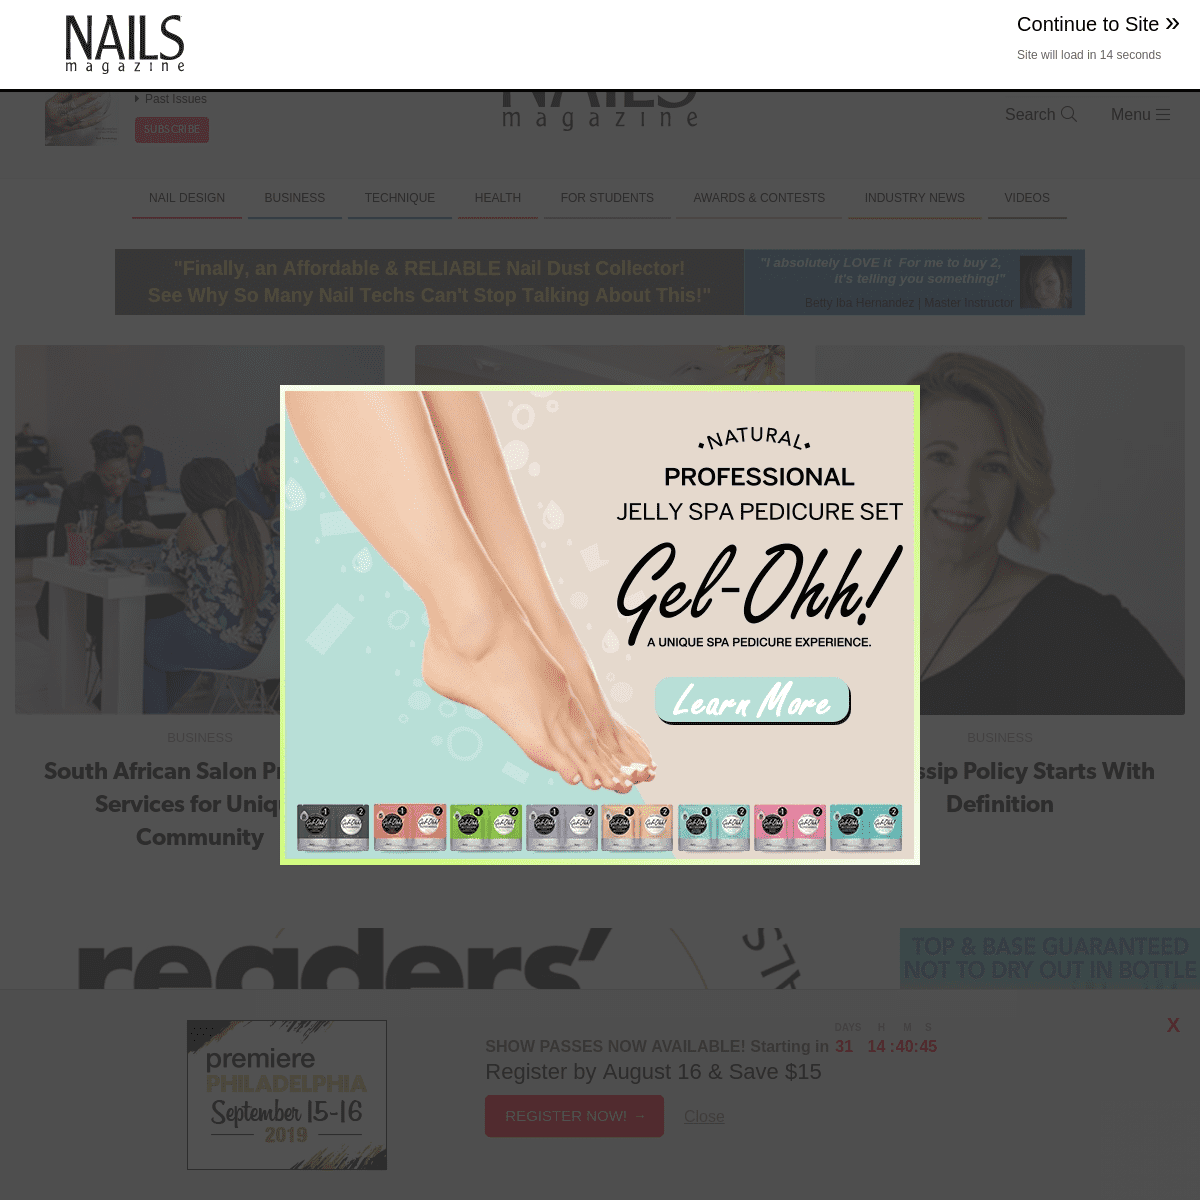 NAILS Magazine | Nail Salon Techniques, Nail Art, Business Tips